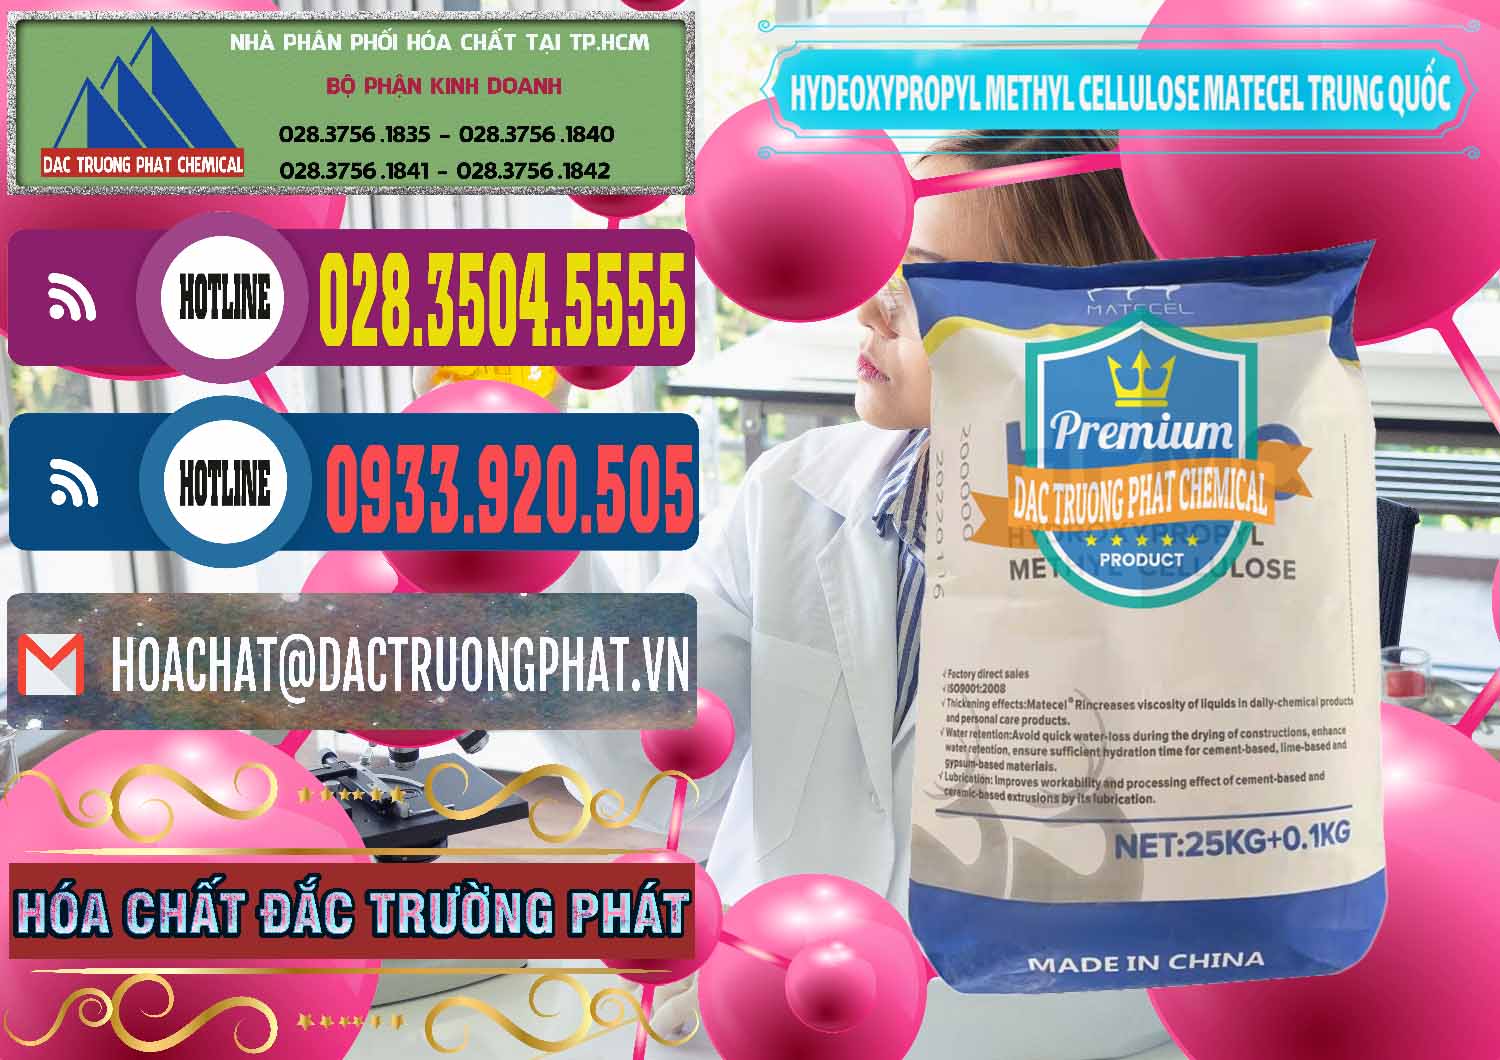 Nơi chuyên bán _ cung cấp Chất Tạo Đặc HPMC - Hydroxypropyl Methyl Cellulose Matecel Trung Quốc China - 0396 - Cty cung cấp _ bán hóa chất tại TP.HCM - muabanhoachat.com.vn